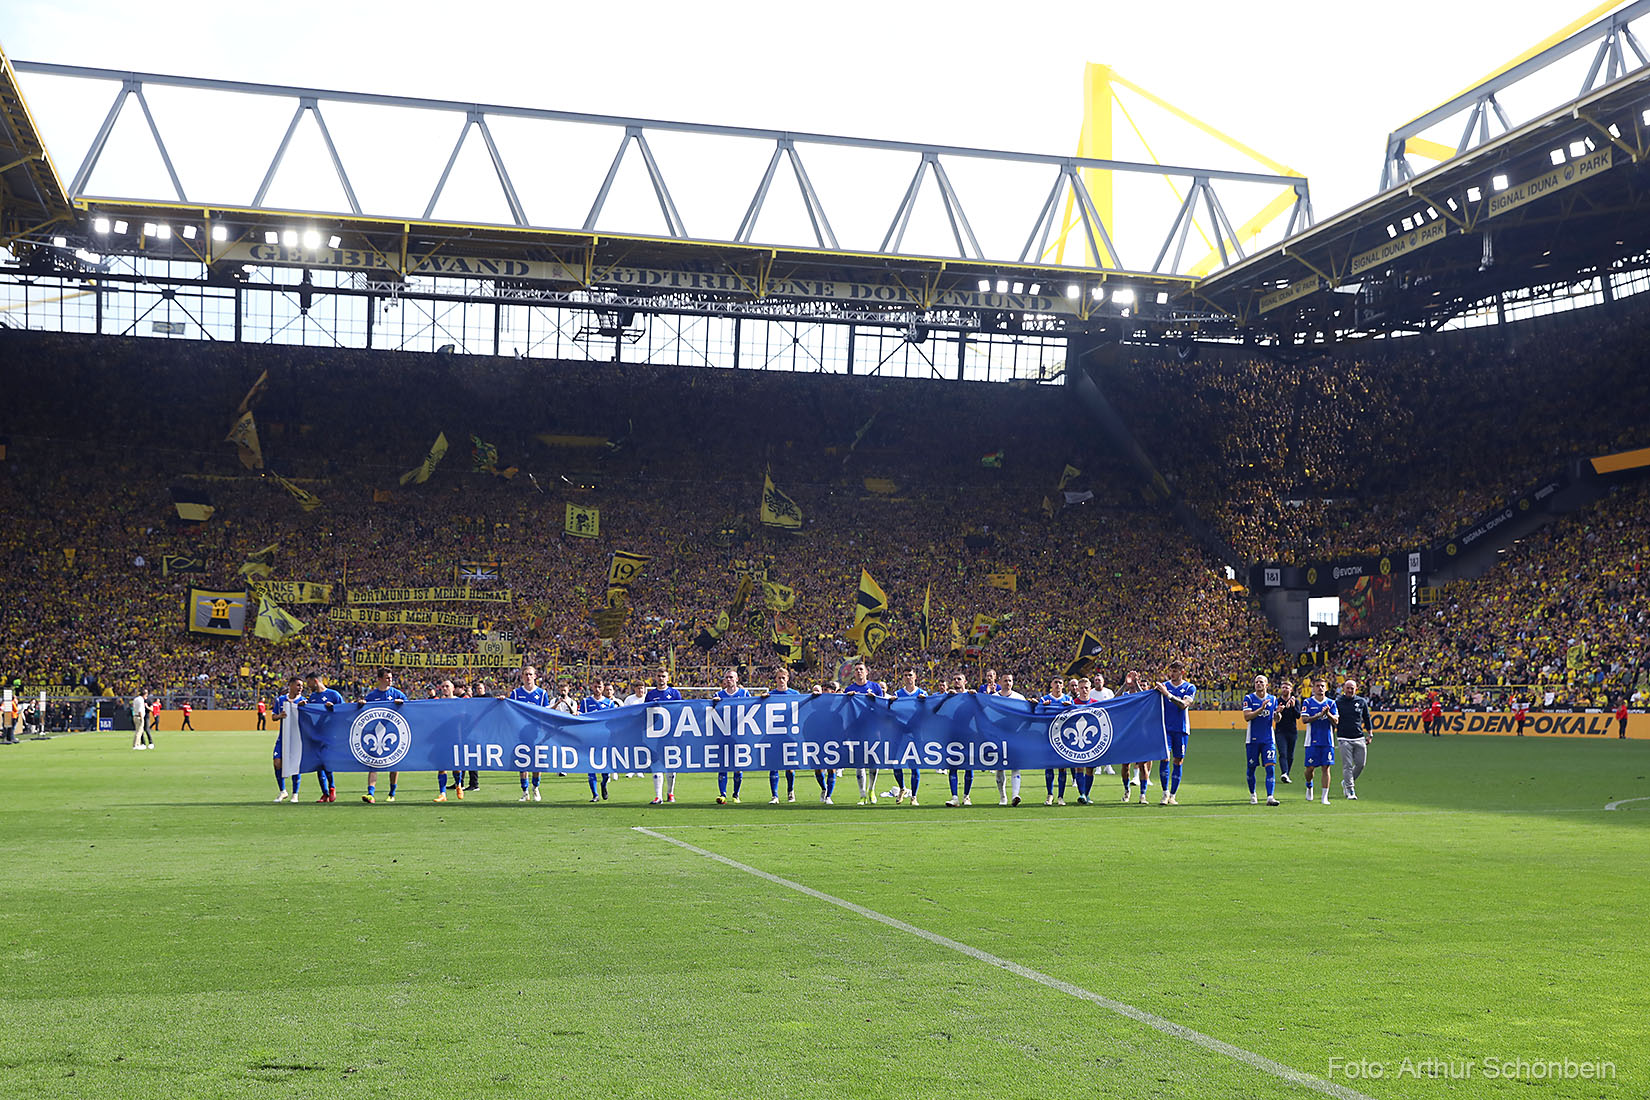 Unsere Bilder vom Spiel in Dortmund